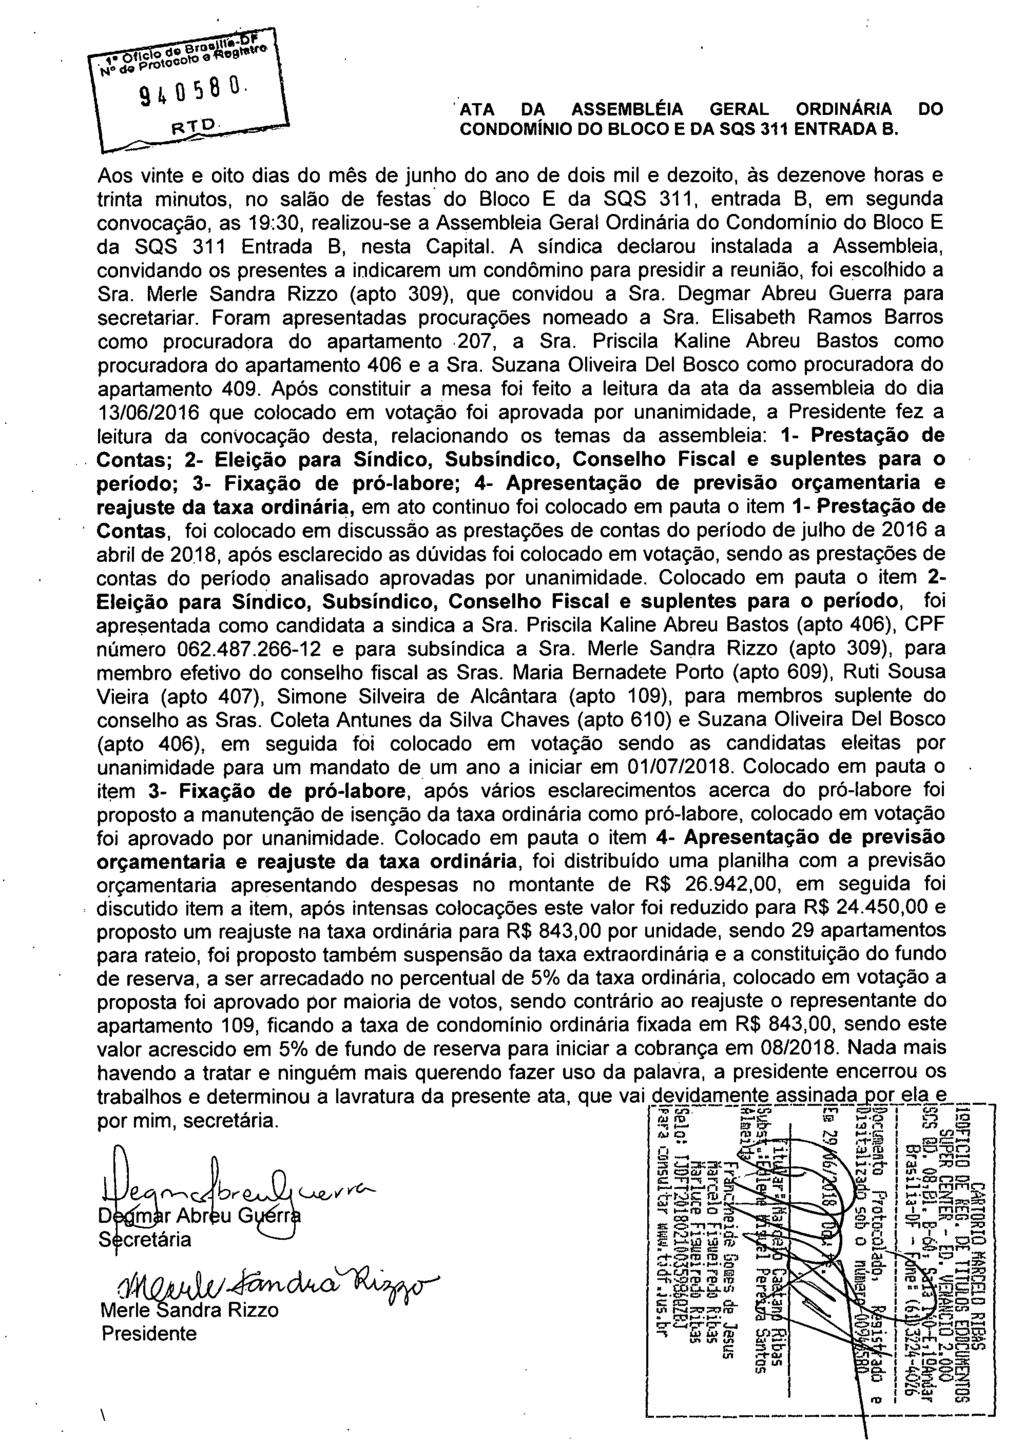 ATA DA ASSEMBLÉIA GERAL ORDINÁRIA DO CONDOMÍNIO DO BLOCO E DA SQS 311 ENTRADA B.